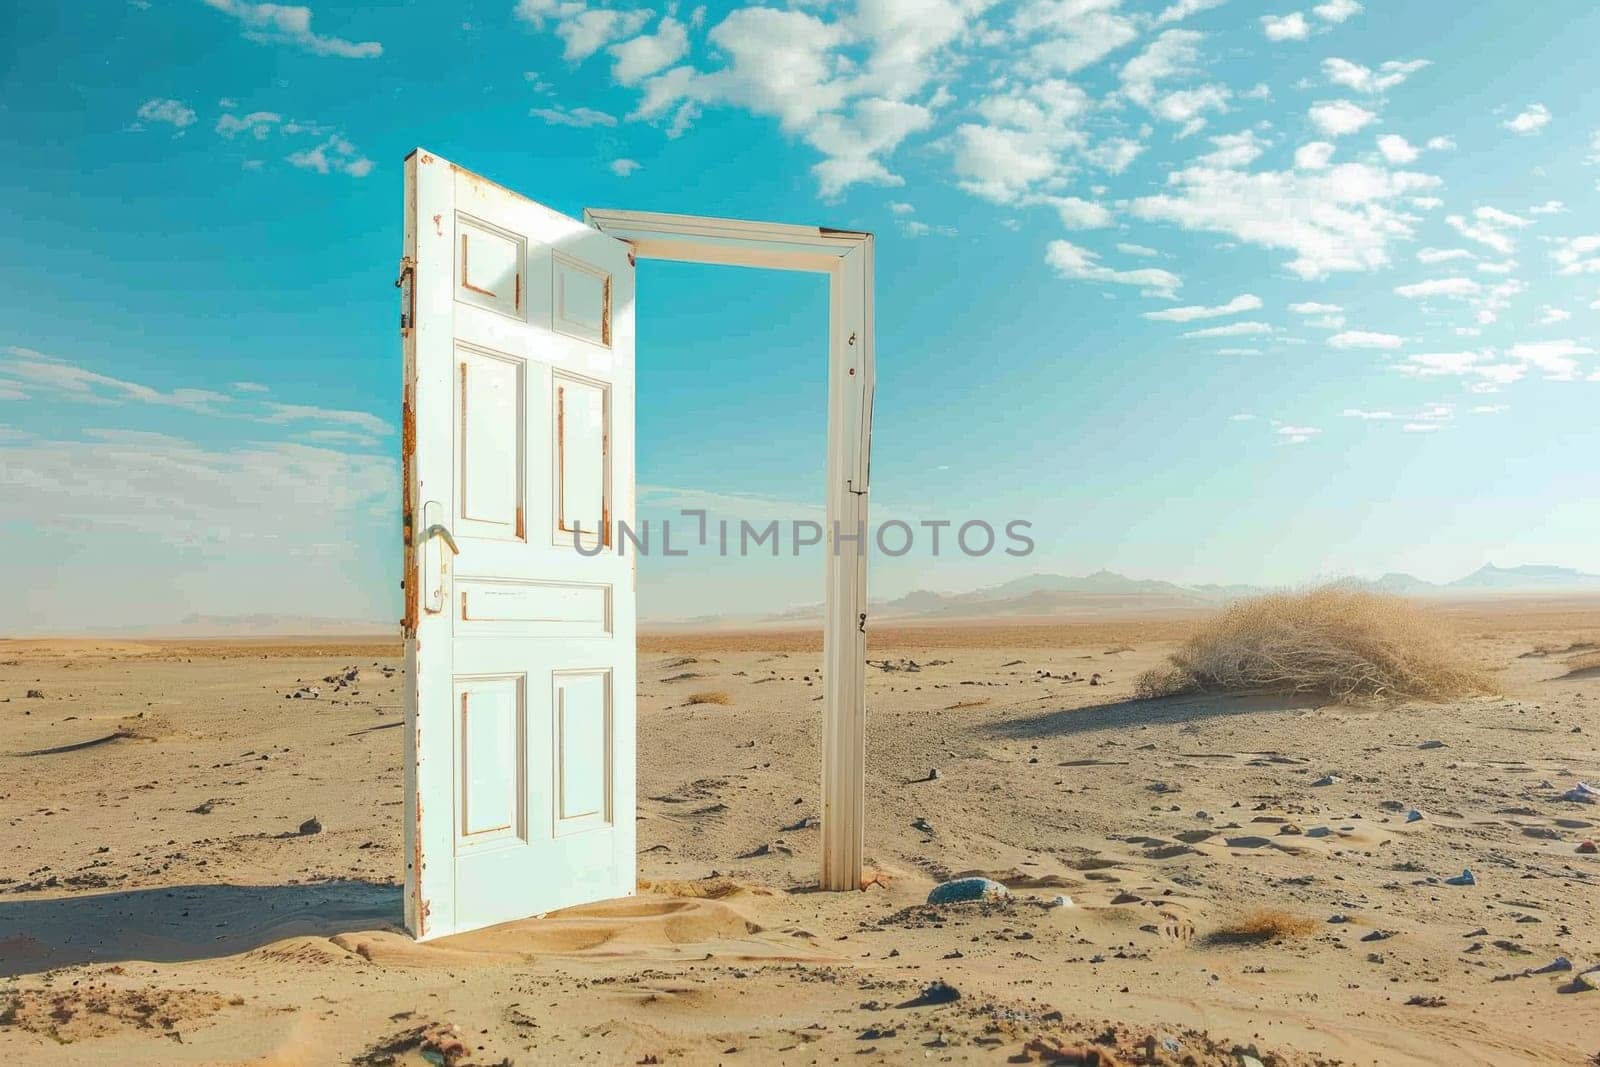 A white door is open in a desert.